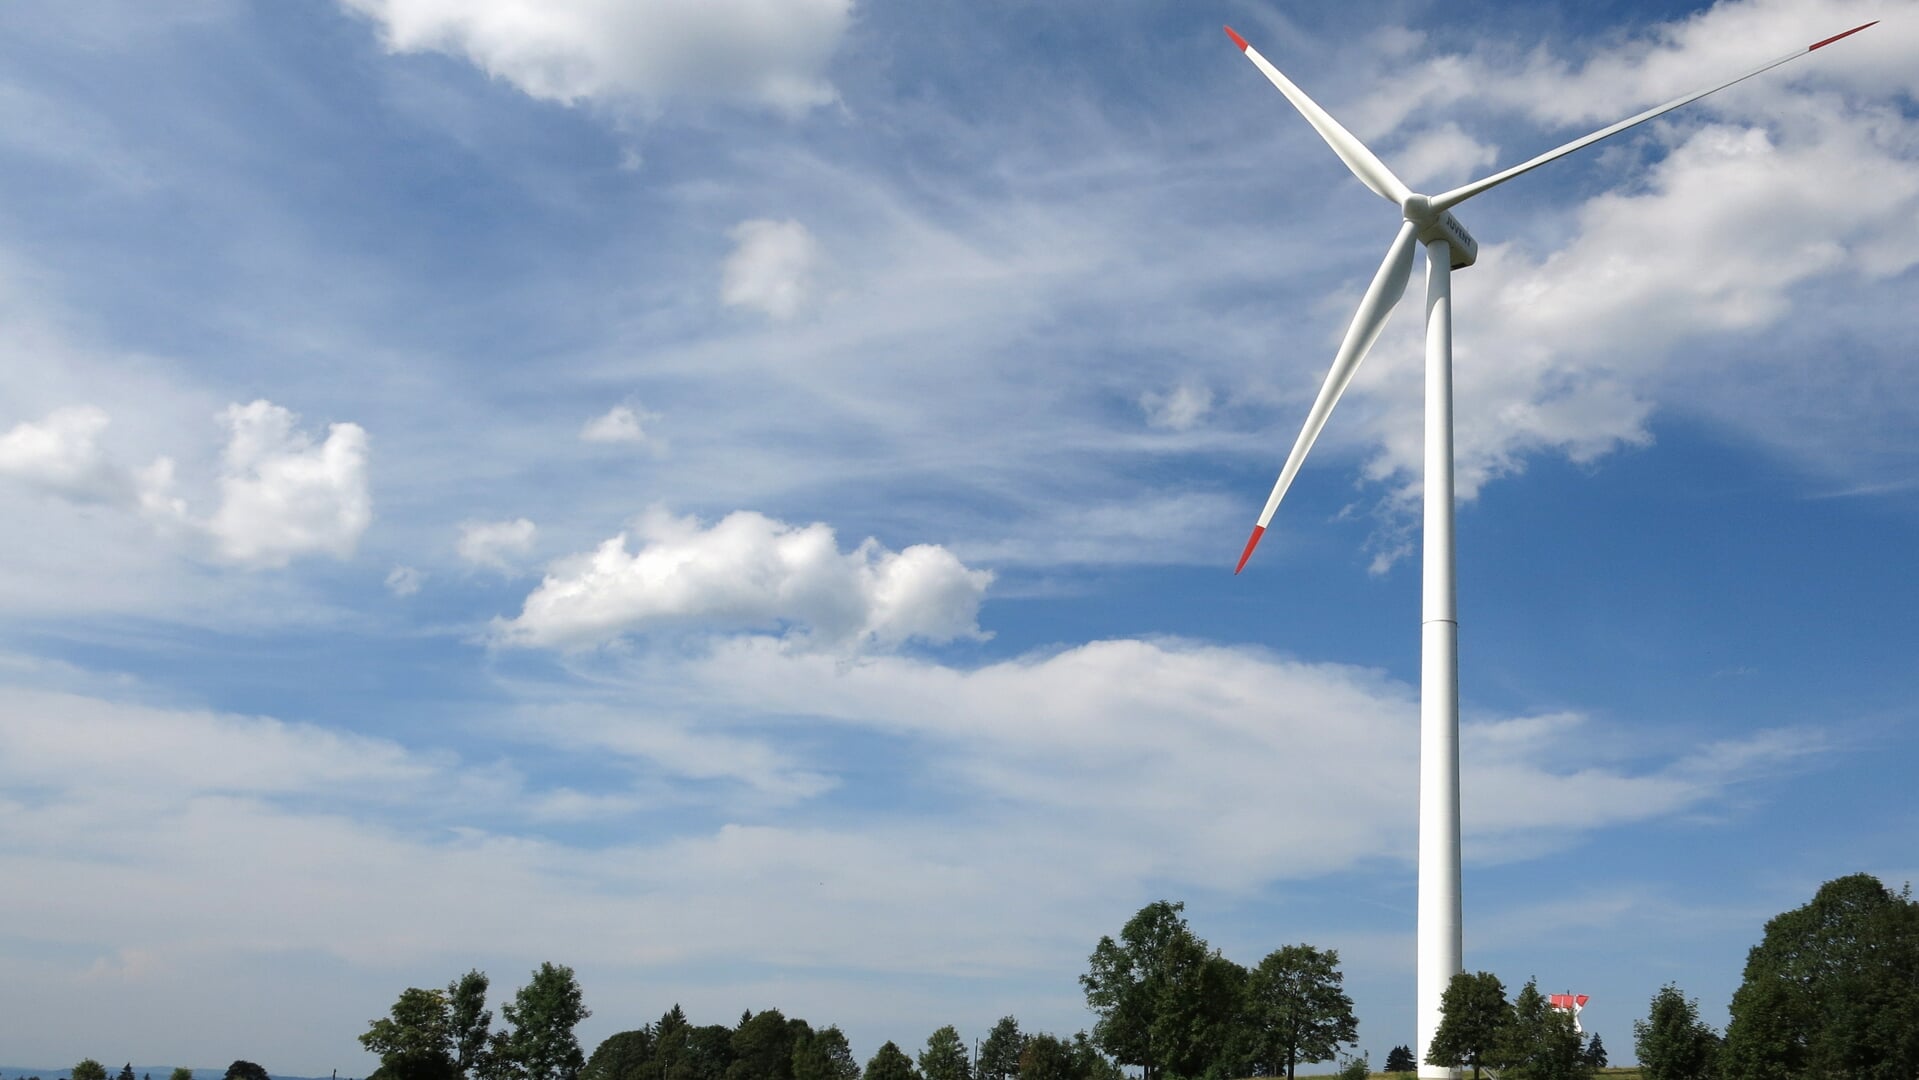 Er is een lijst gemaakt met zes mogelijke locaties voor windenergie.